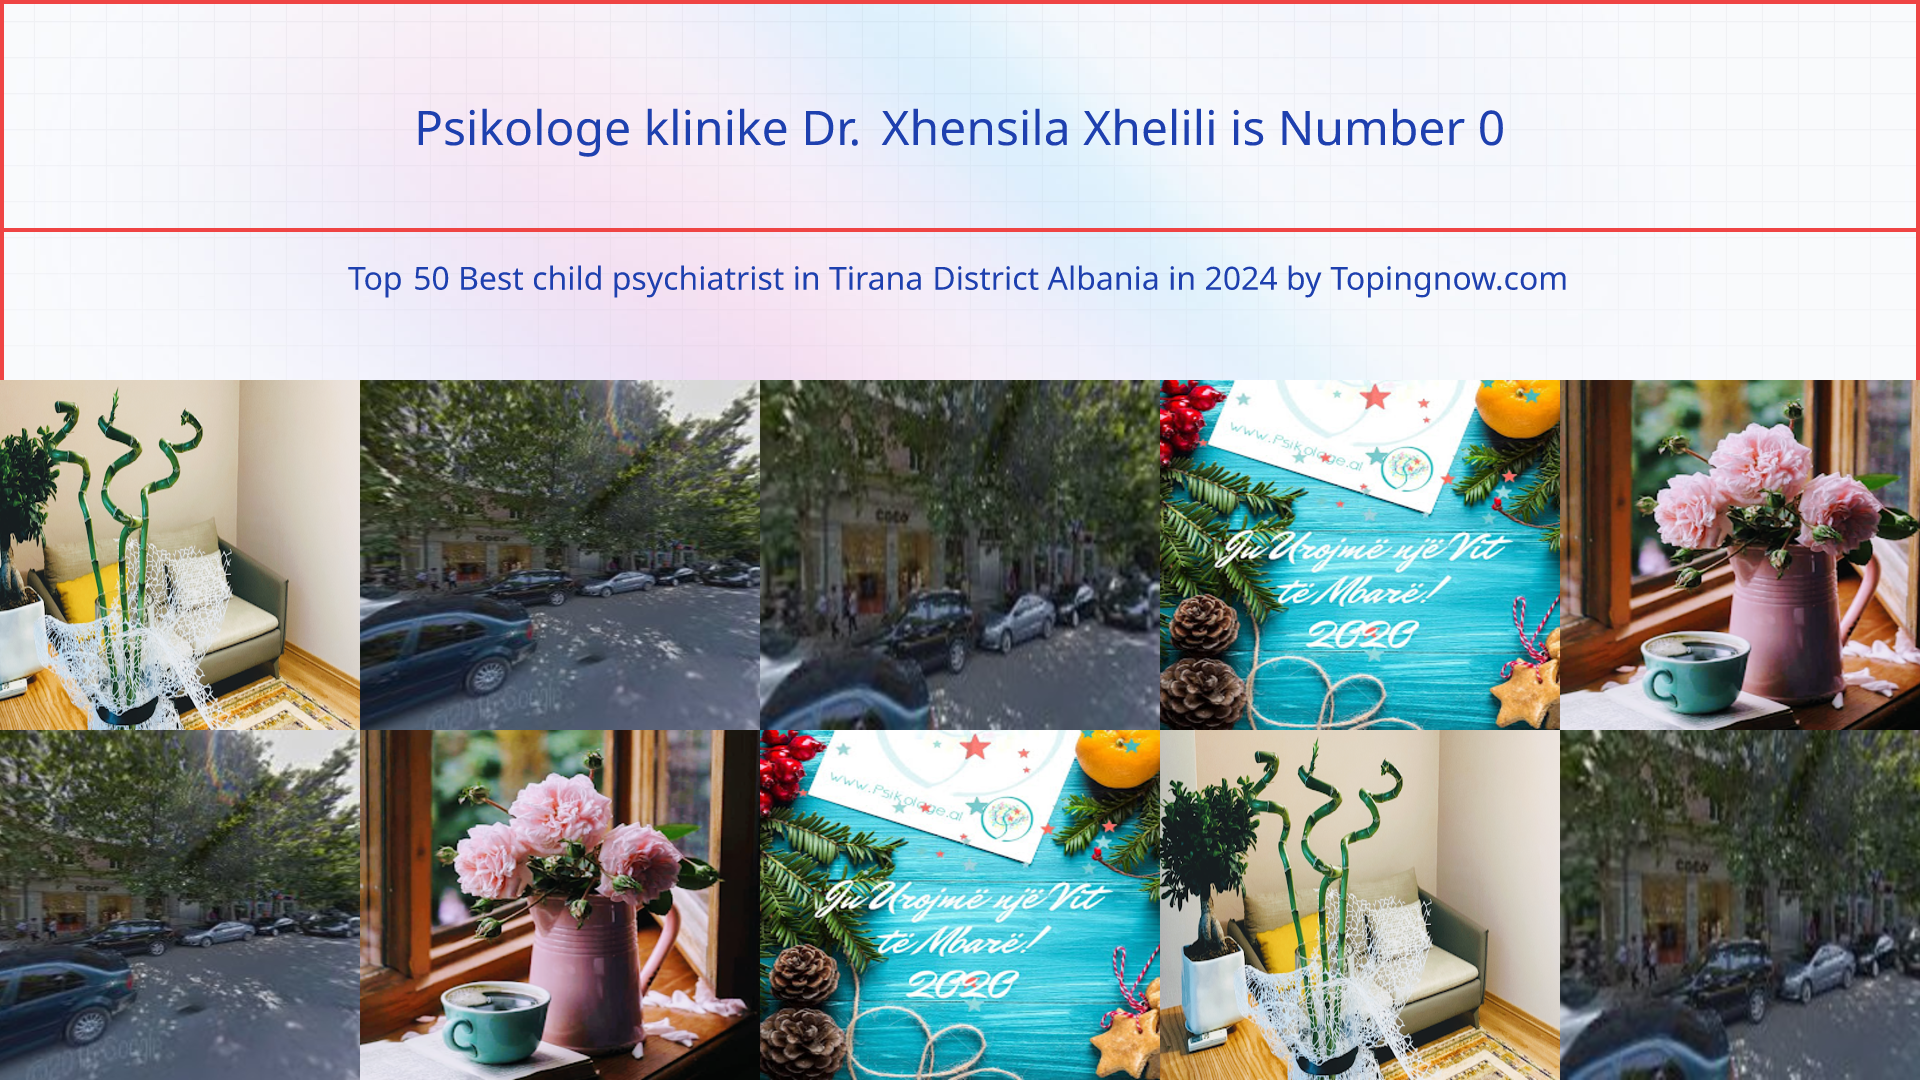 Psikologe klinike Dr. Xhensila Xhelili: Top 50 Best child psychiatrist in Tirana District Albania in 2024